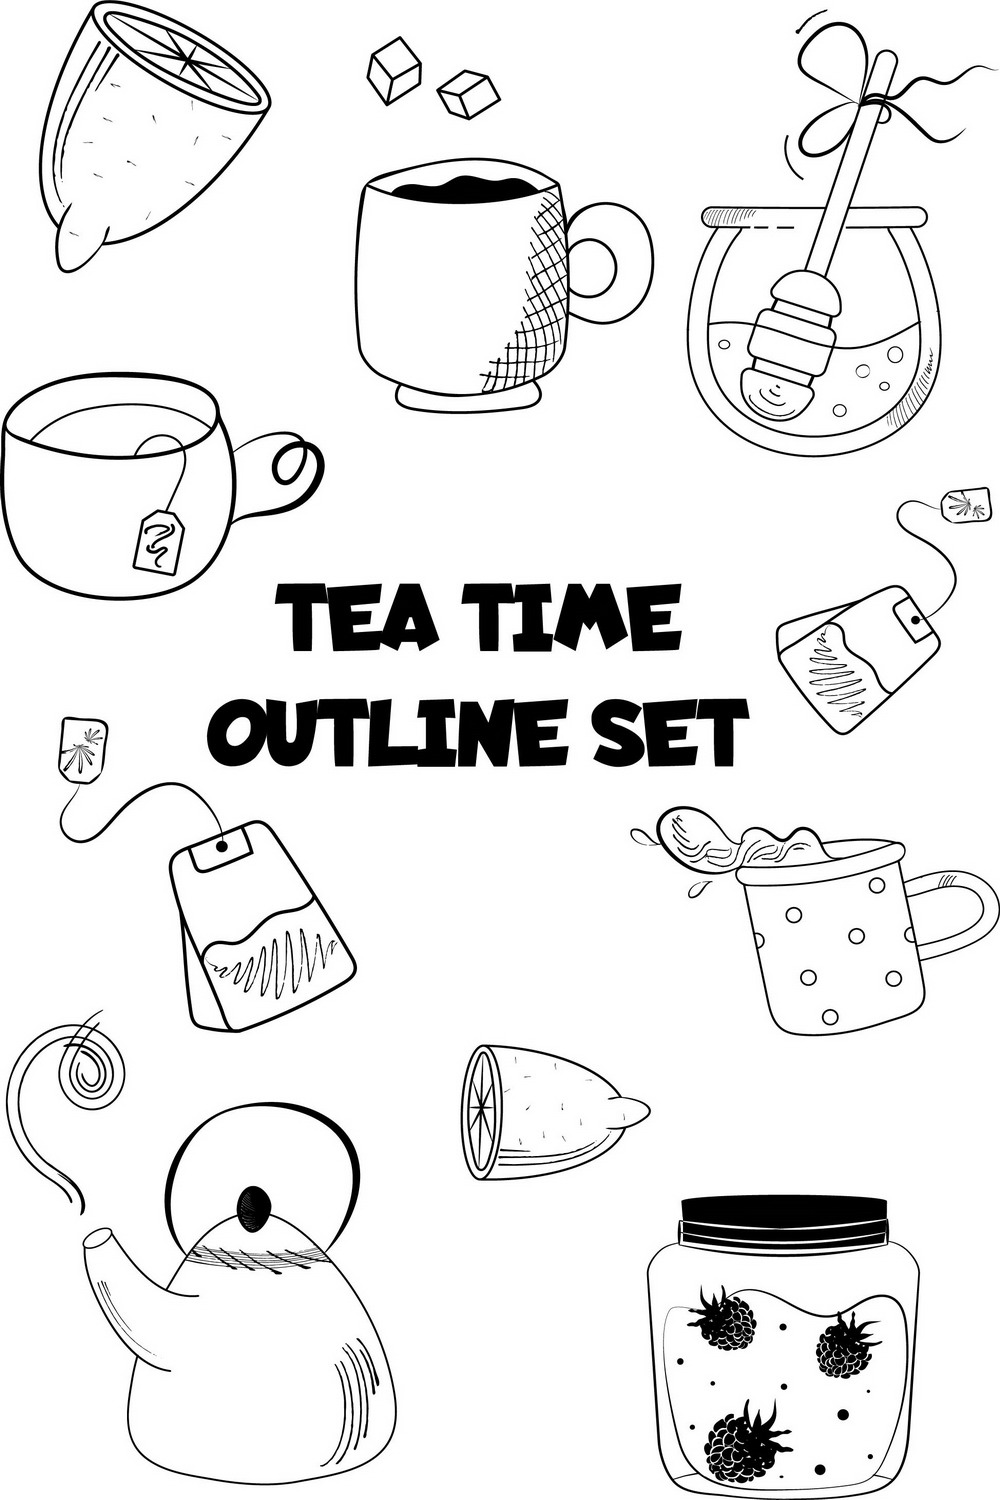 Tea Time Outline Doodle Set pinterest image.